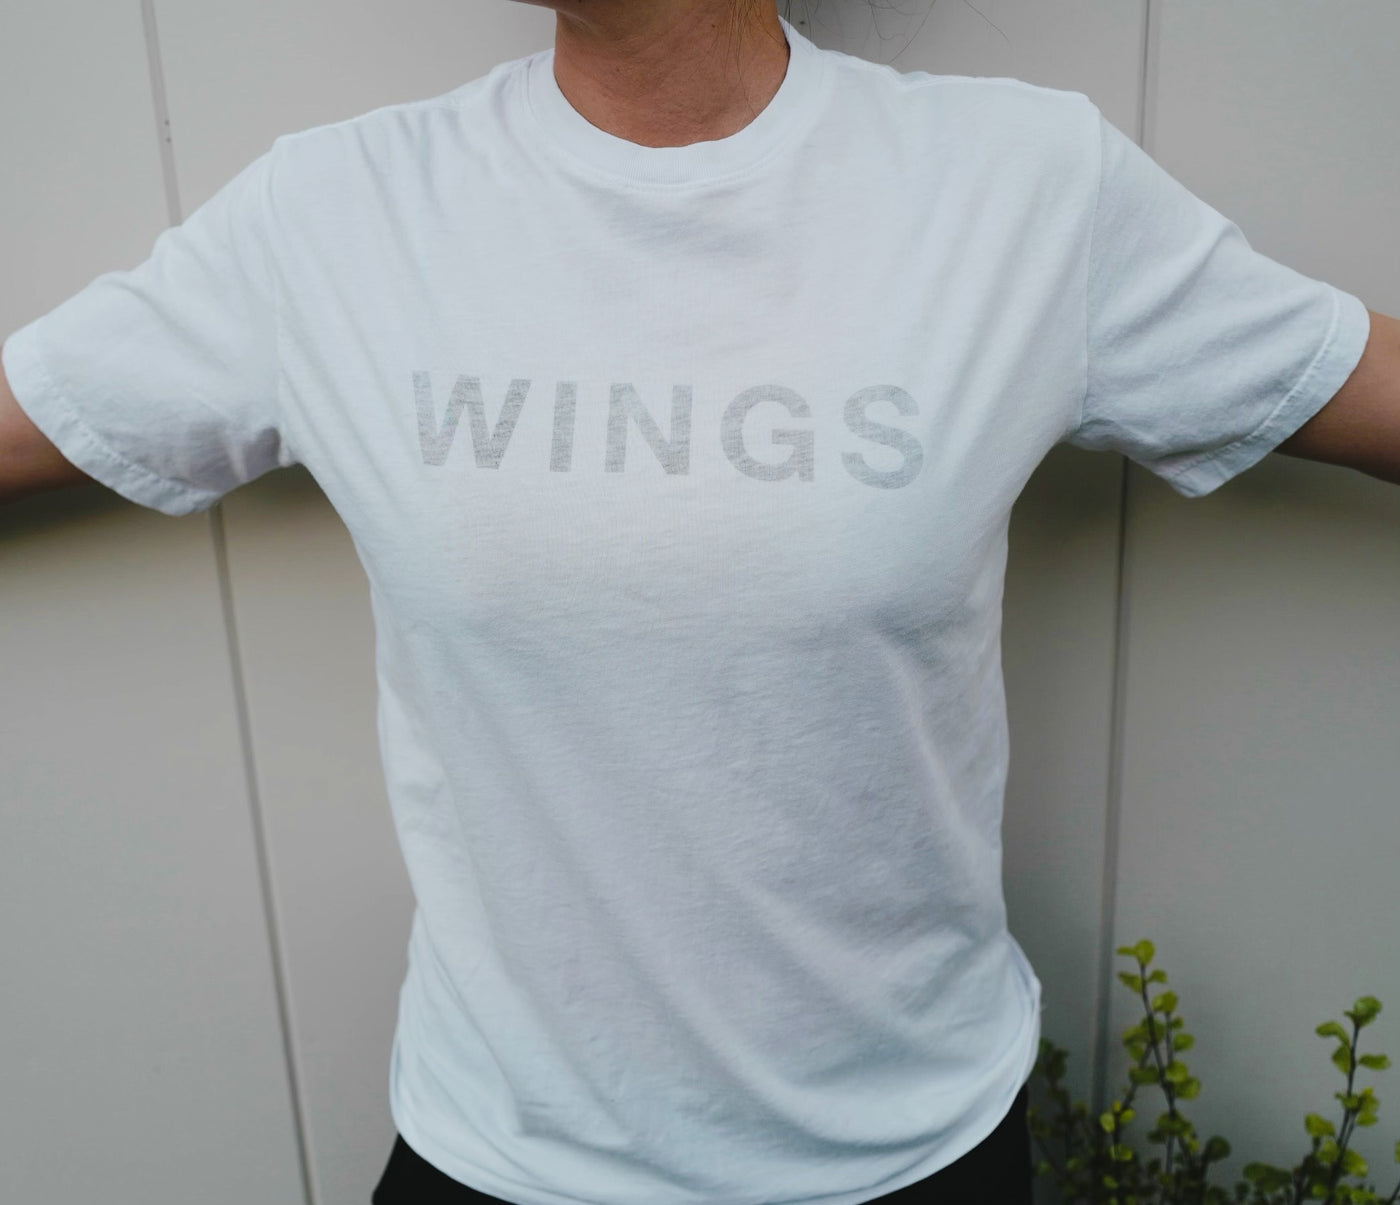 Edición limitada - Camiseta blanca WINGS Reverse